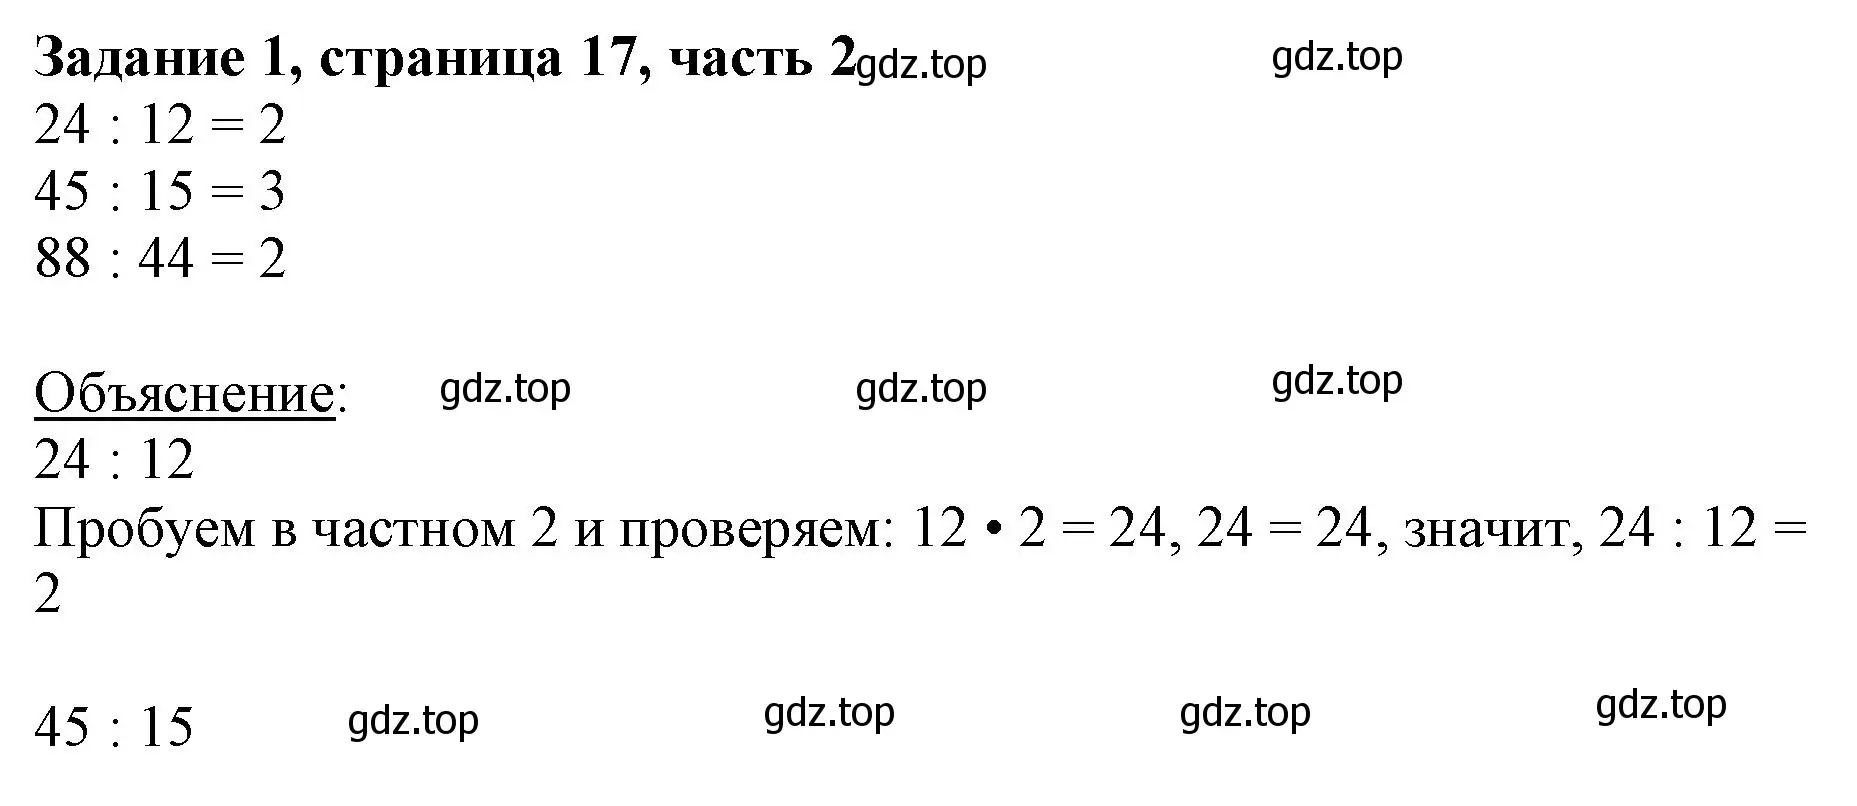 Решение номер 1 (страница 17) гдз по математике 3 класс Моро, Бантова, учебник 2 часть